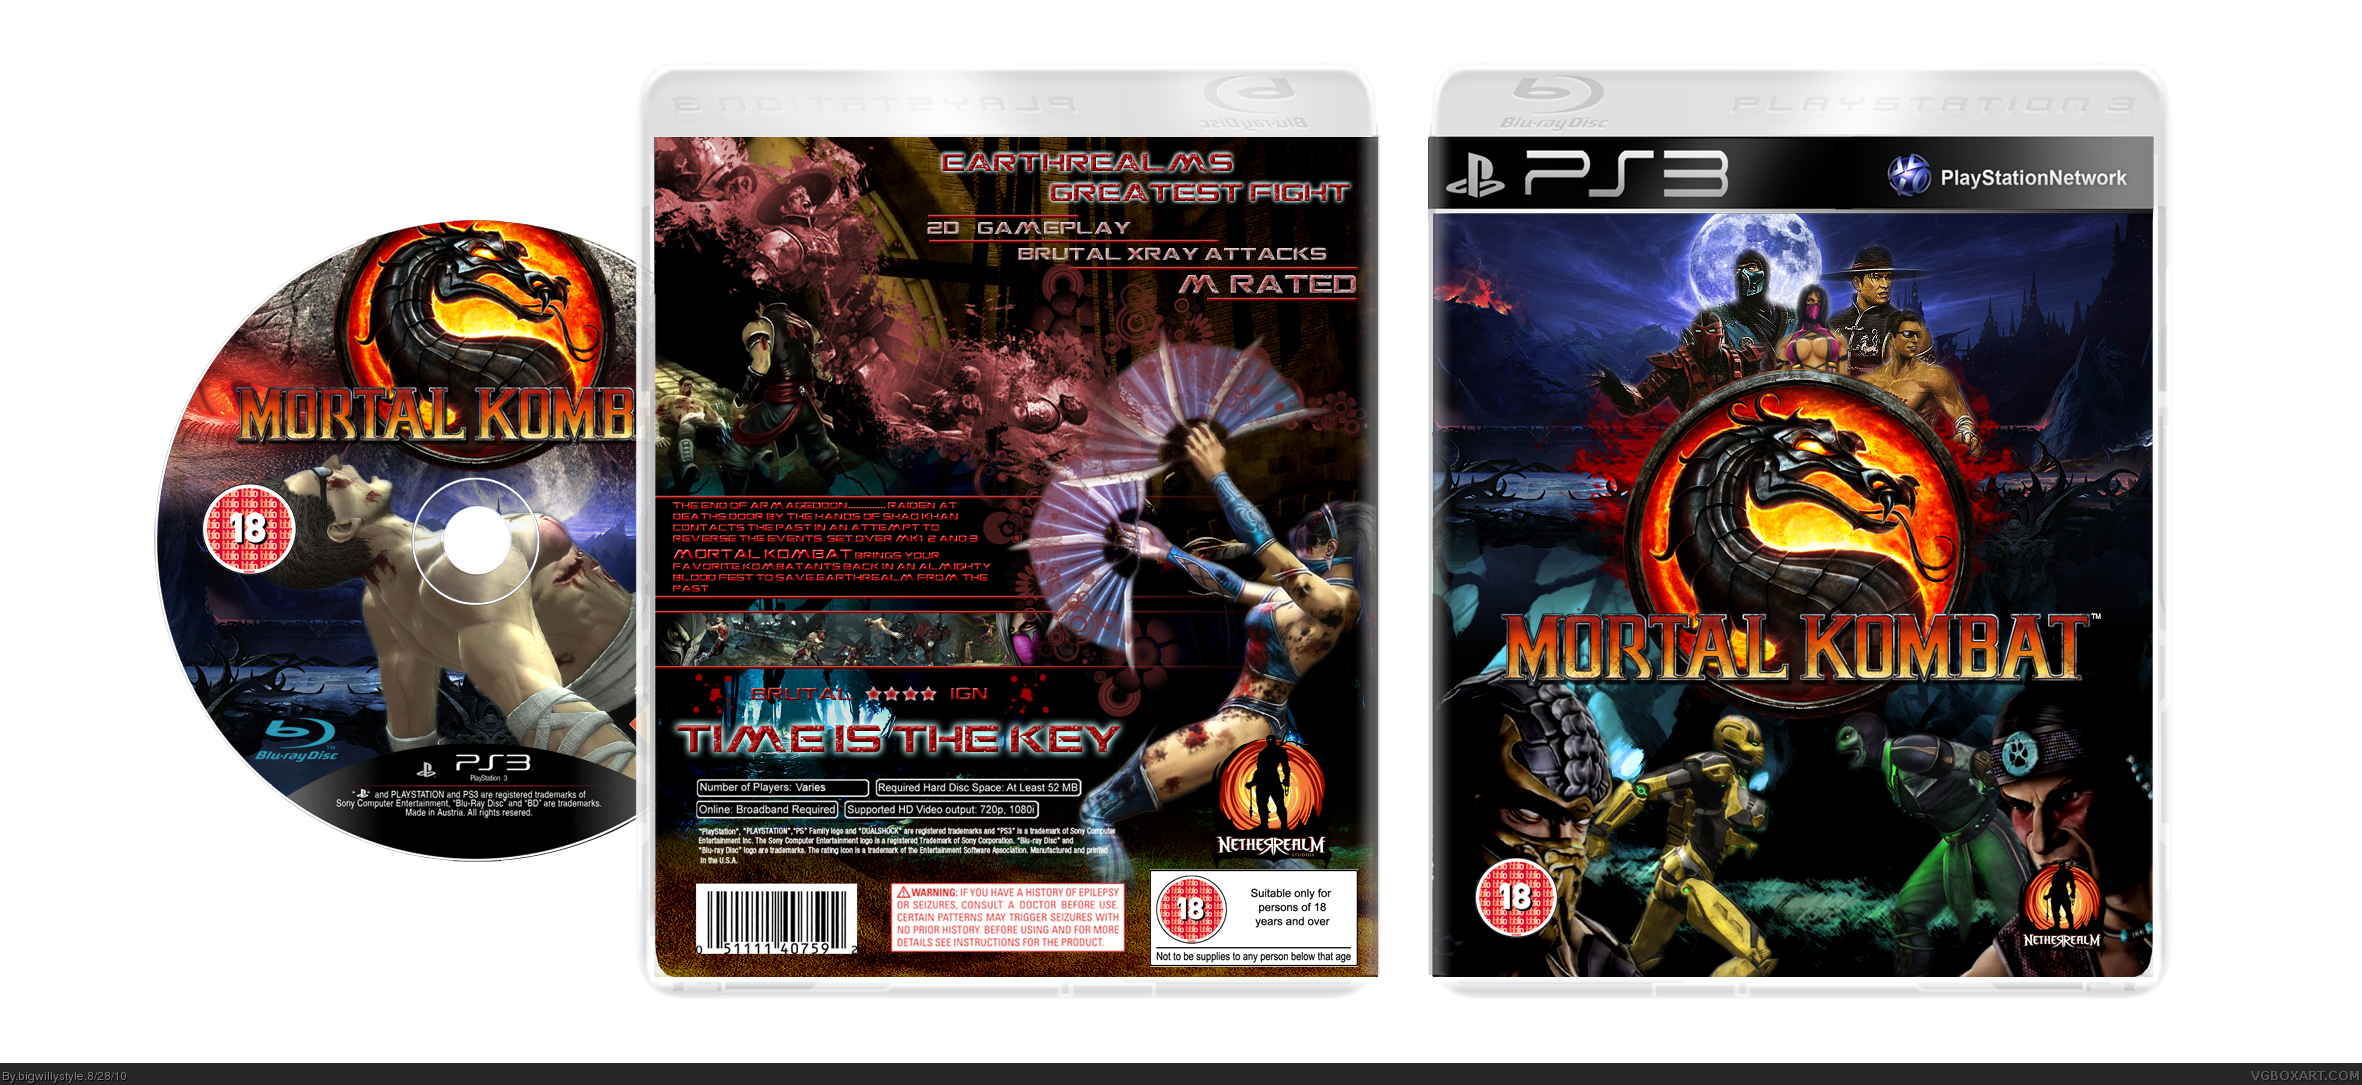 Диск для PLAYSTATION Portable Mortal Kombat. Mortal Kombat ps3 обложка. Mortal Kombat 2011 обложка. Диск мортал комбат 3.